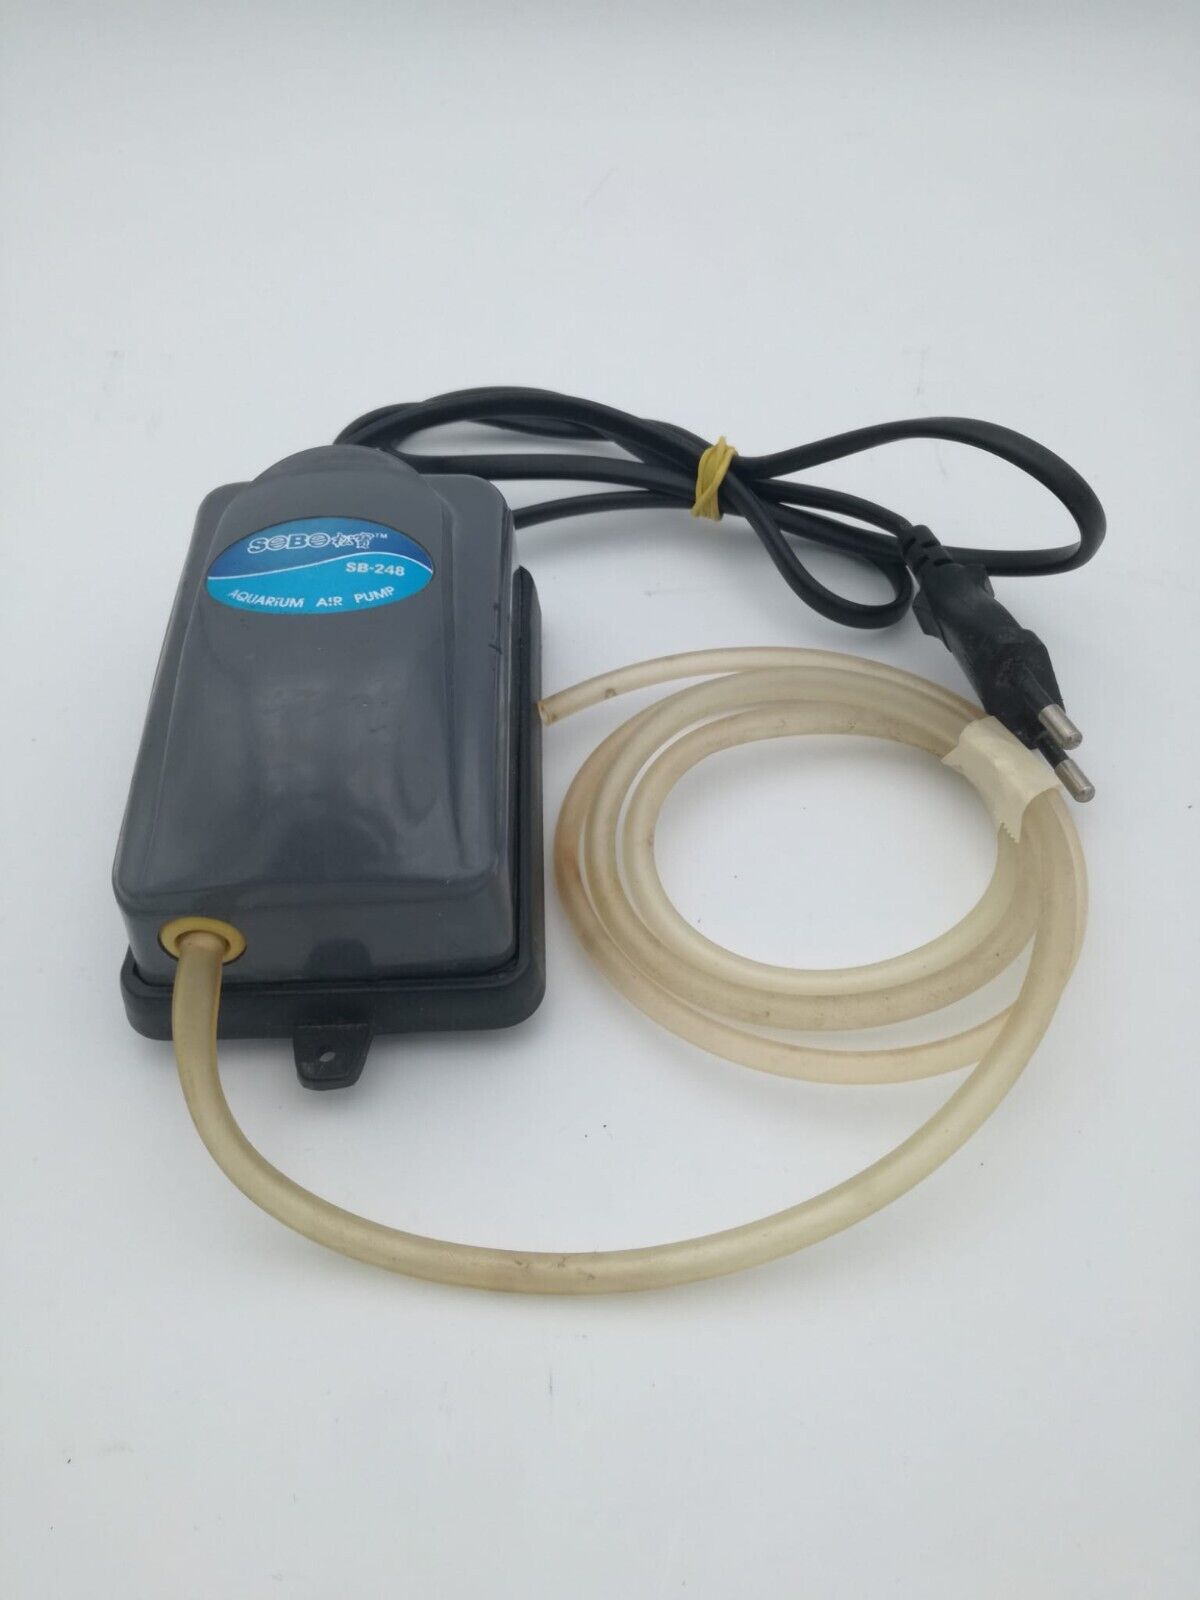 pompa per acquario usata funzionante SB-248 220v